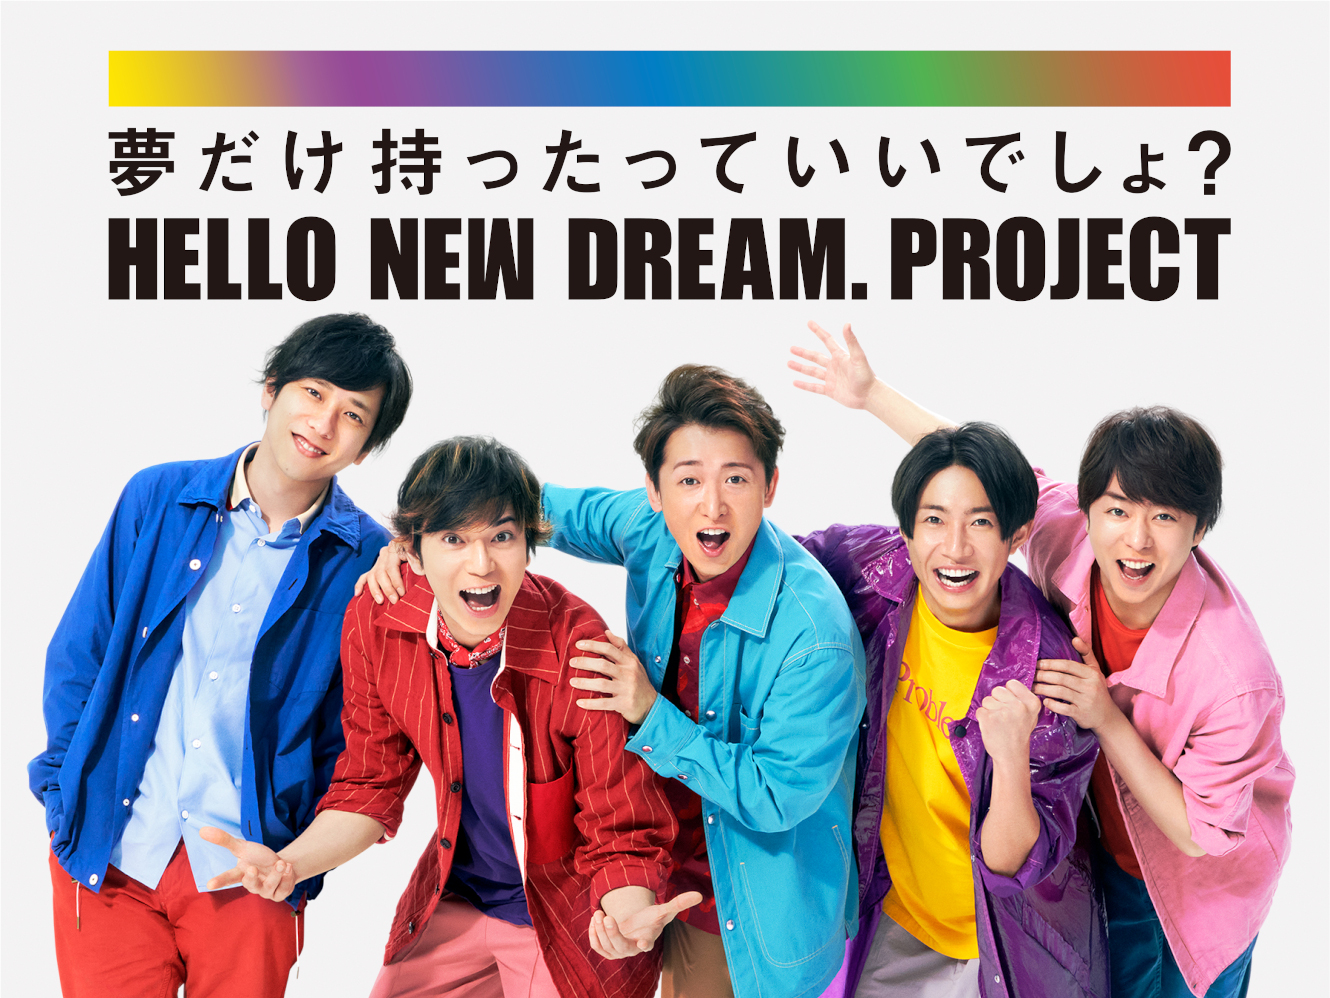 嵐と13の企業で日本を元気に Hello New Dream Project ブレーンデジタル版